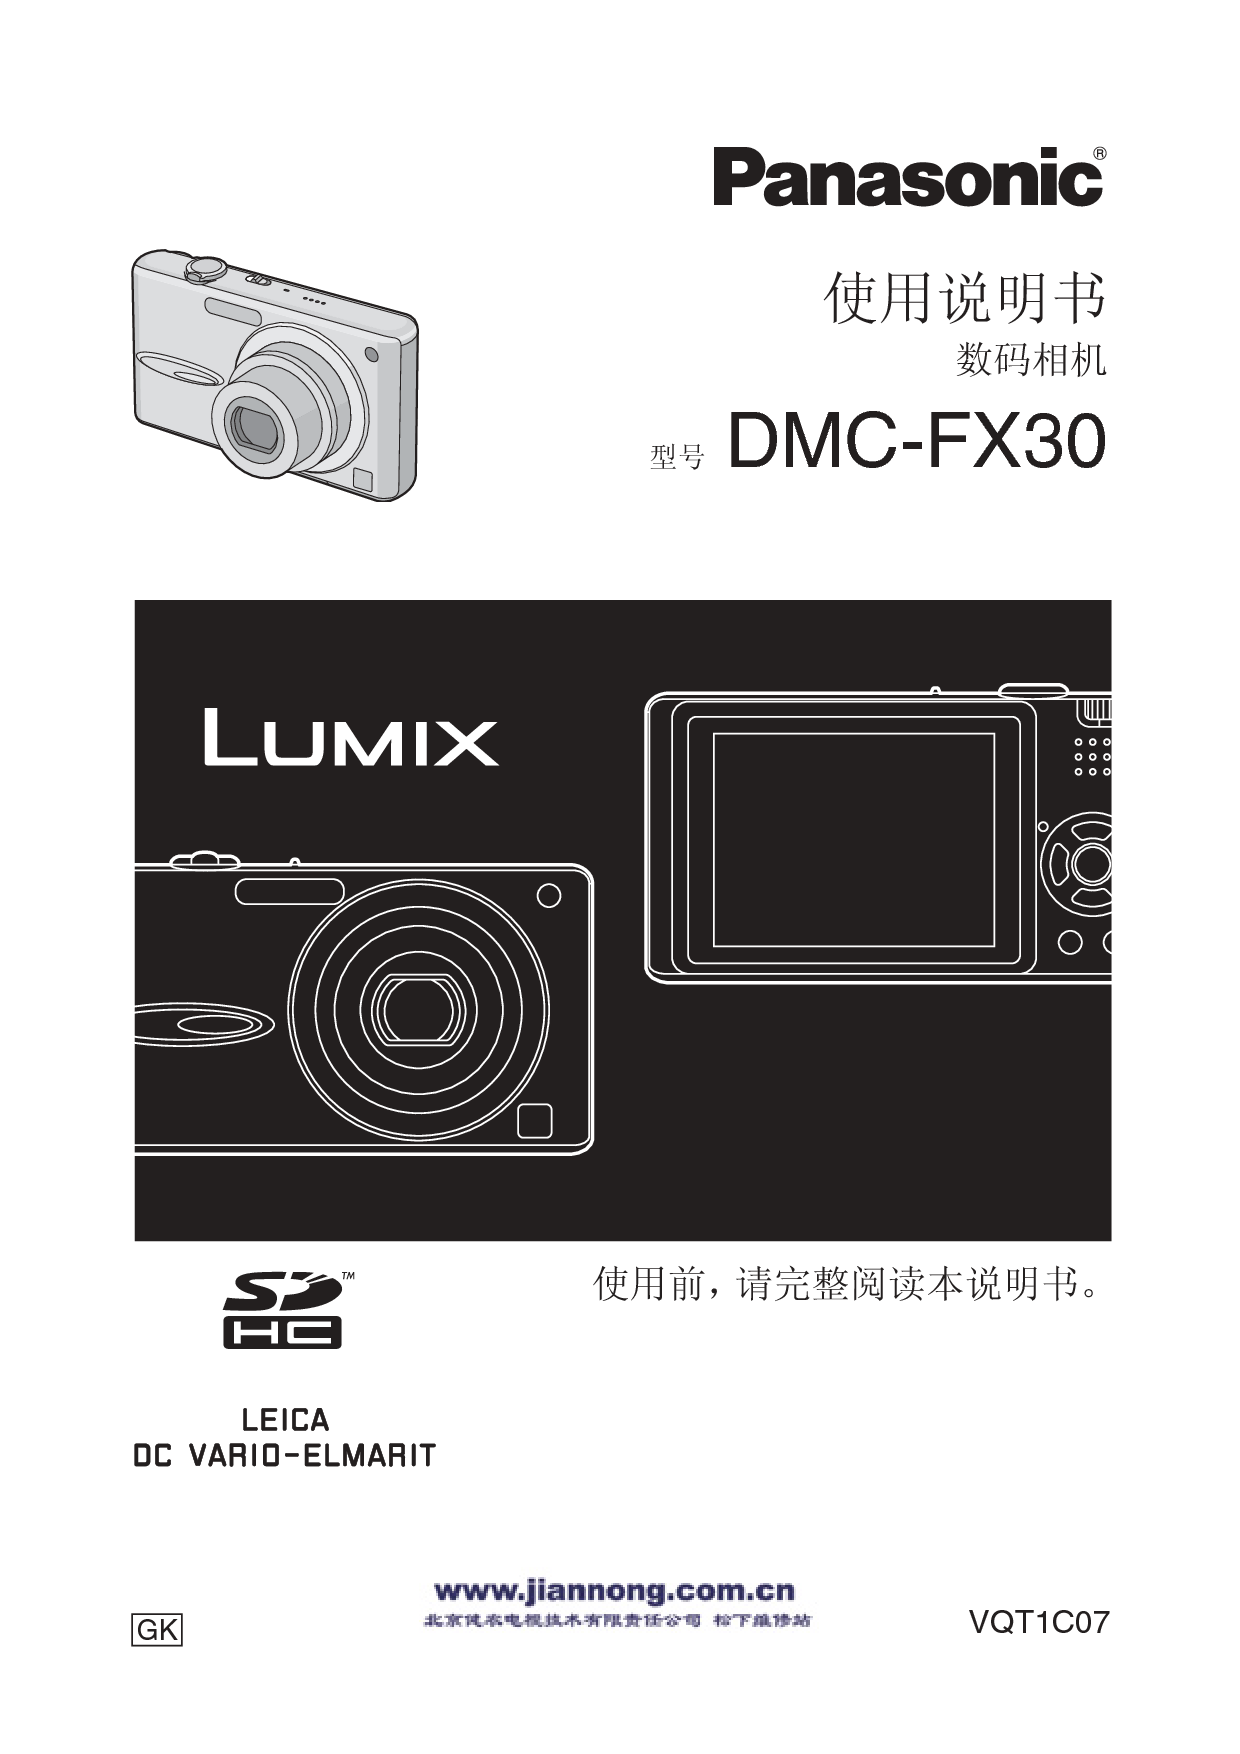 松下 Panasonic DMC-FX30 说明书 封面